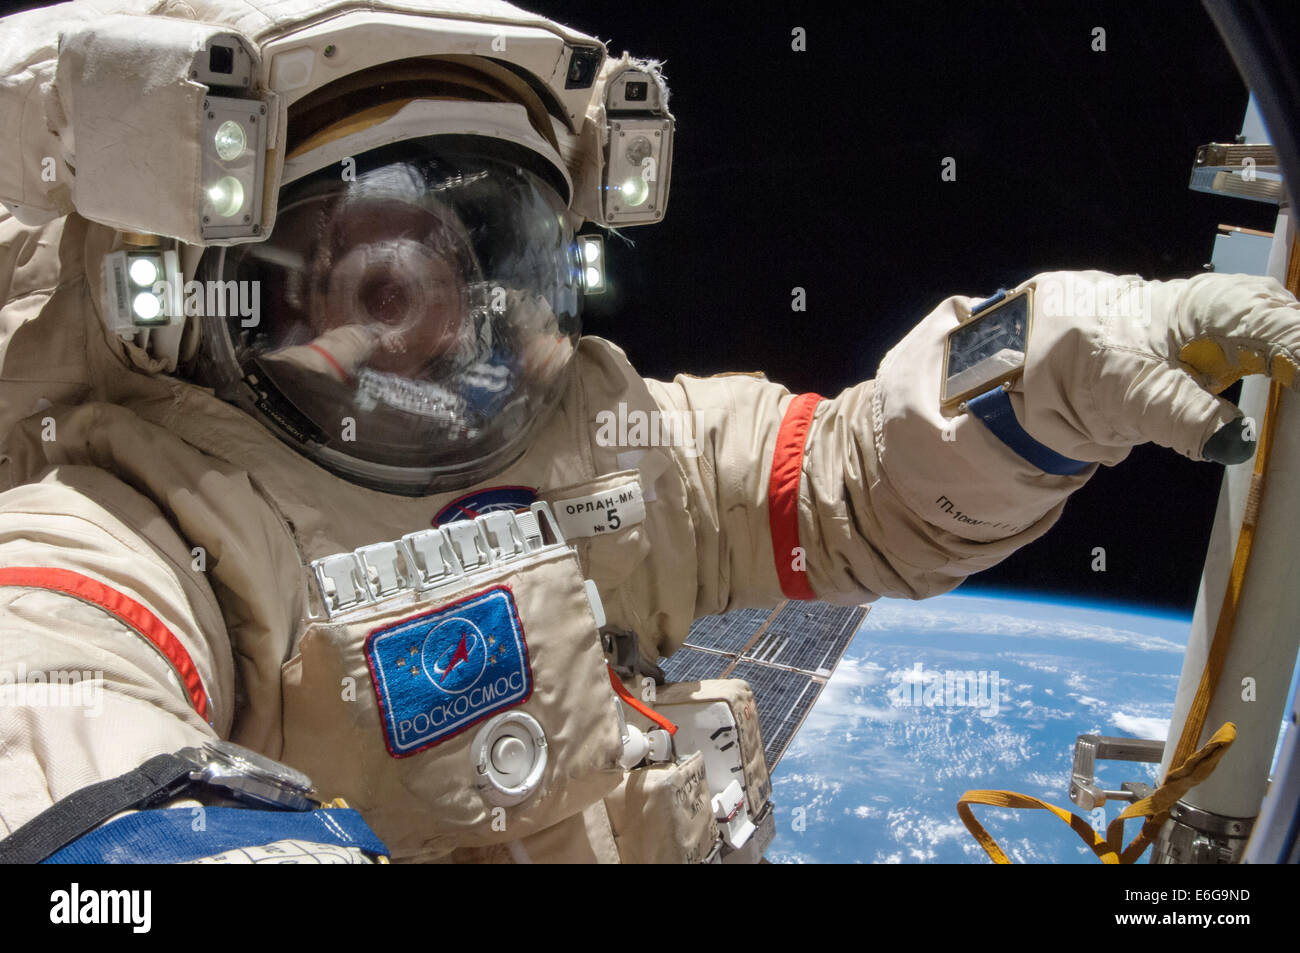 I cosmonauti russi Alexander Skvortsov con la Stazione Spaziale Internazionale Expedition 40 equipaggio funziona su installazione pacchetti di esperimento e di ispezione dei componenti sulla parte esterna del laboratorio orbitale durante un periodo di cinque ore, 11-minute spacewalk Agosto 18, 2014 in orbita intorno alla terra. Foto Stock